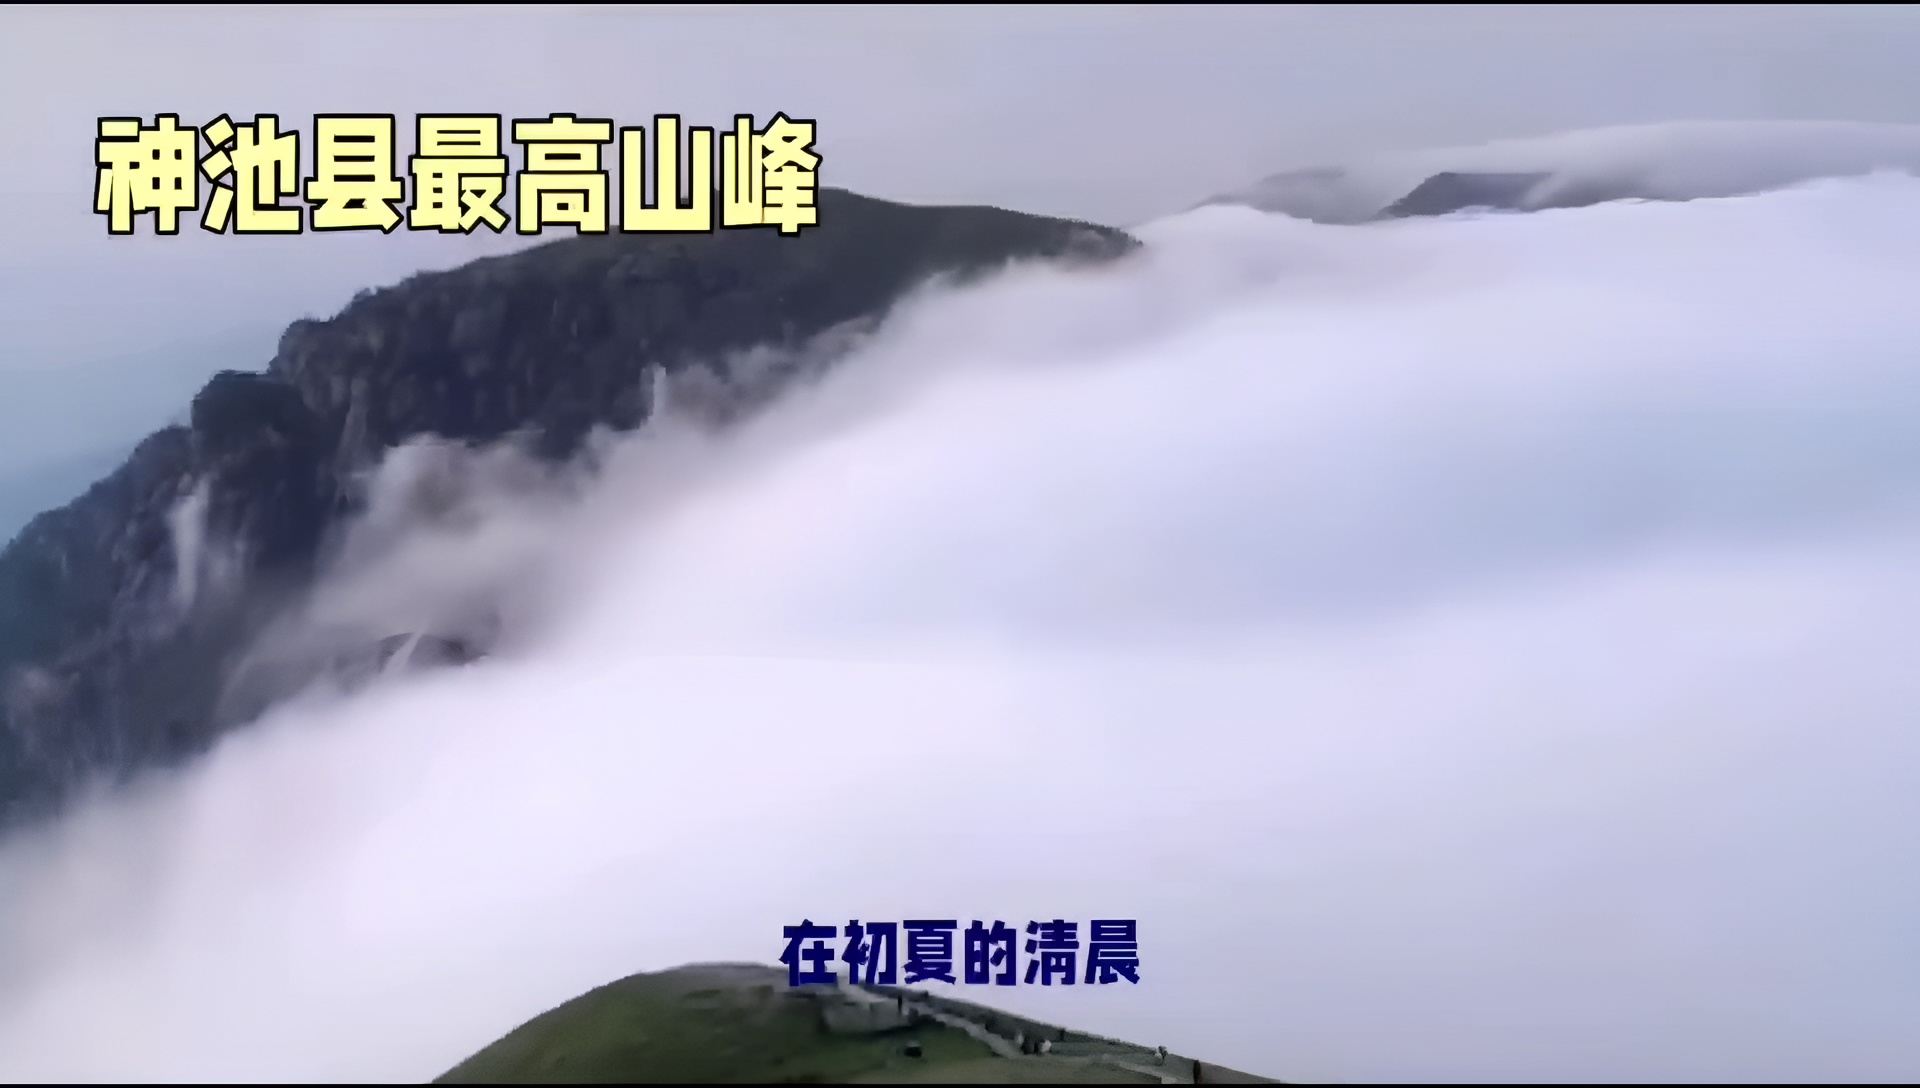 徒步，神池县最高山峰管涔山。